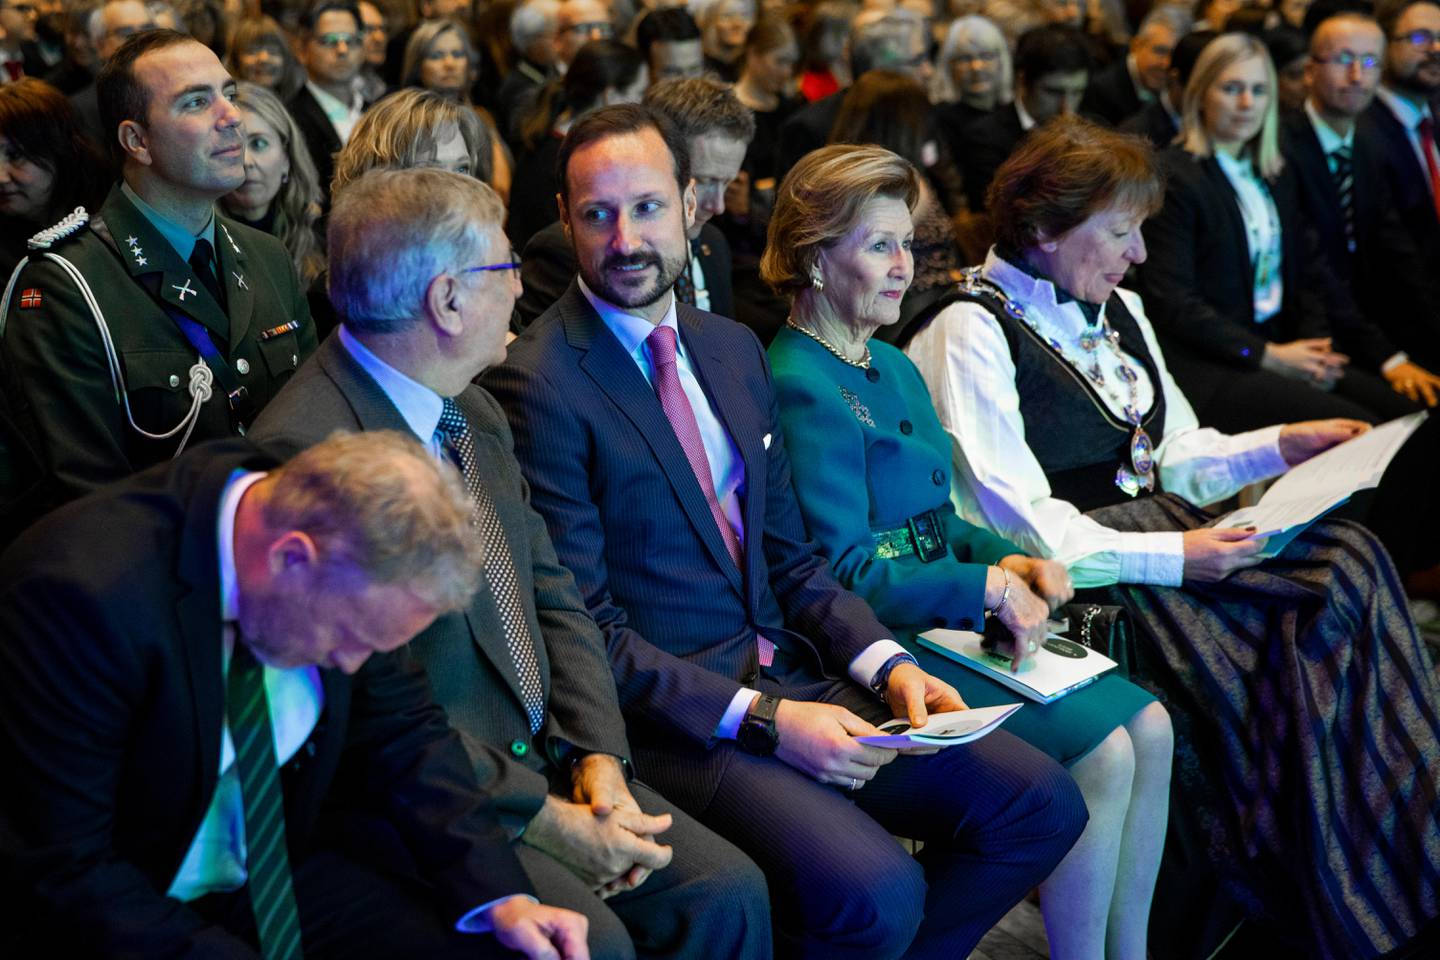 Oslo  20190104.
Kronprins Haakon og dronning Sonja var æresgjester under en høytidelig seremoni i Oslo rådhus for å markere at Oslo er europeisk miljøhovedstad i 2019.
Foto: Tore Meek / NTB scanpix